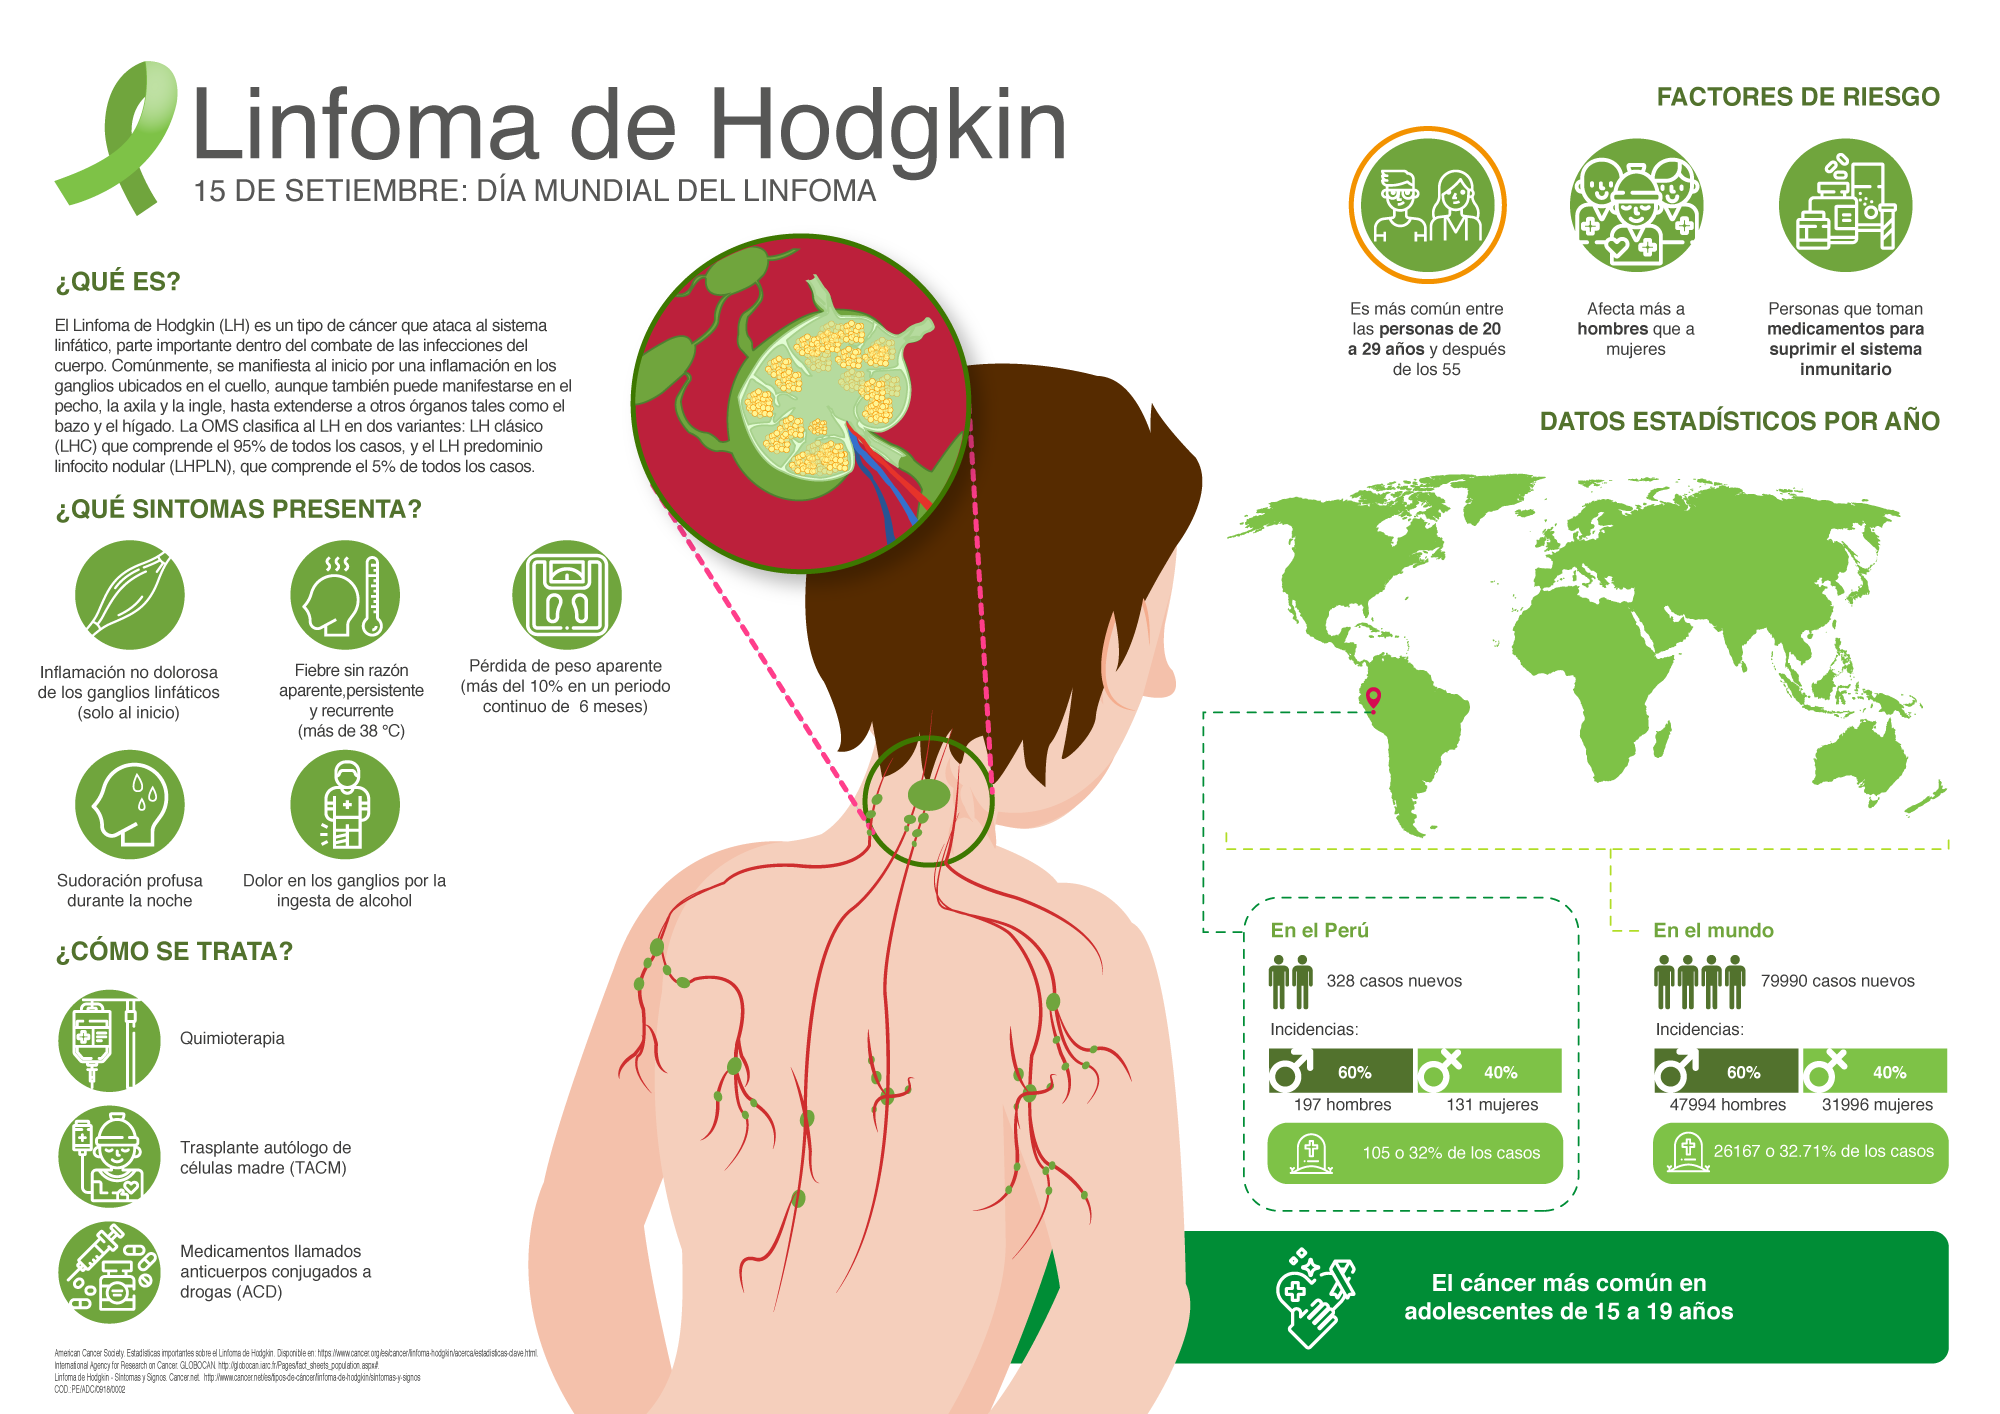 Cinco síntomas del linfoma de Hodgkin, el cáncer más común diagnosticado en adolescentes